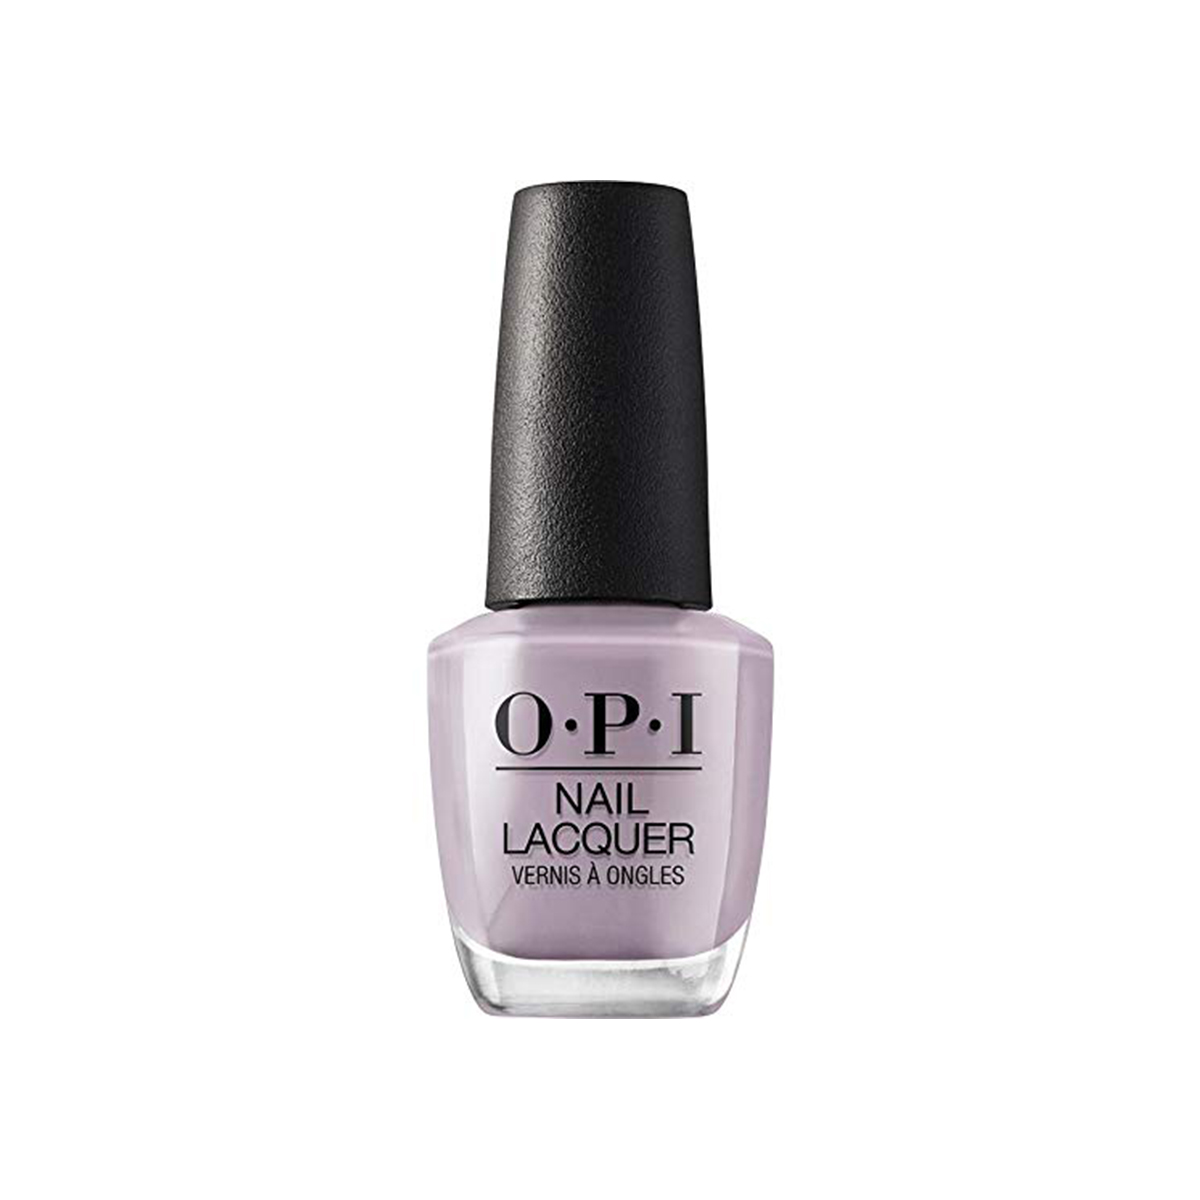 opi purple nail colors